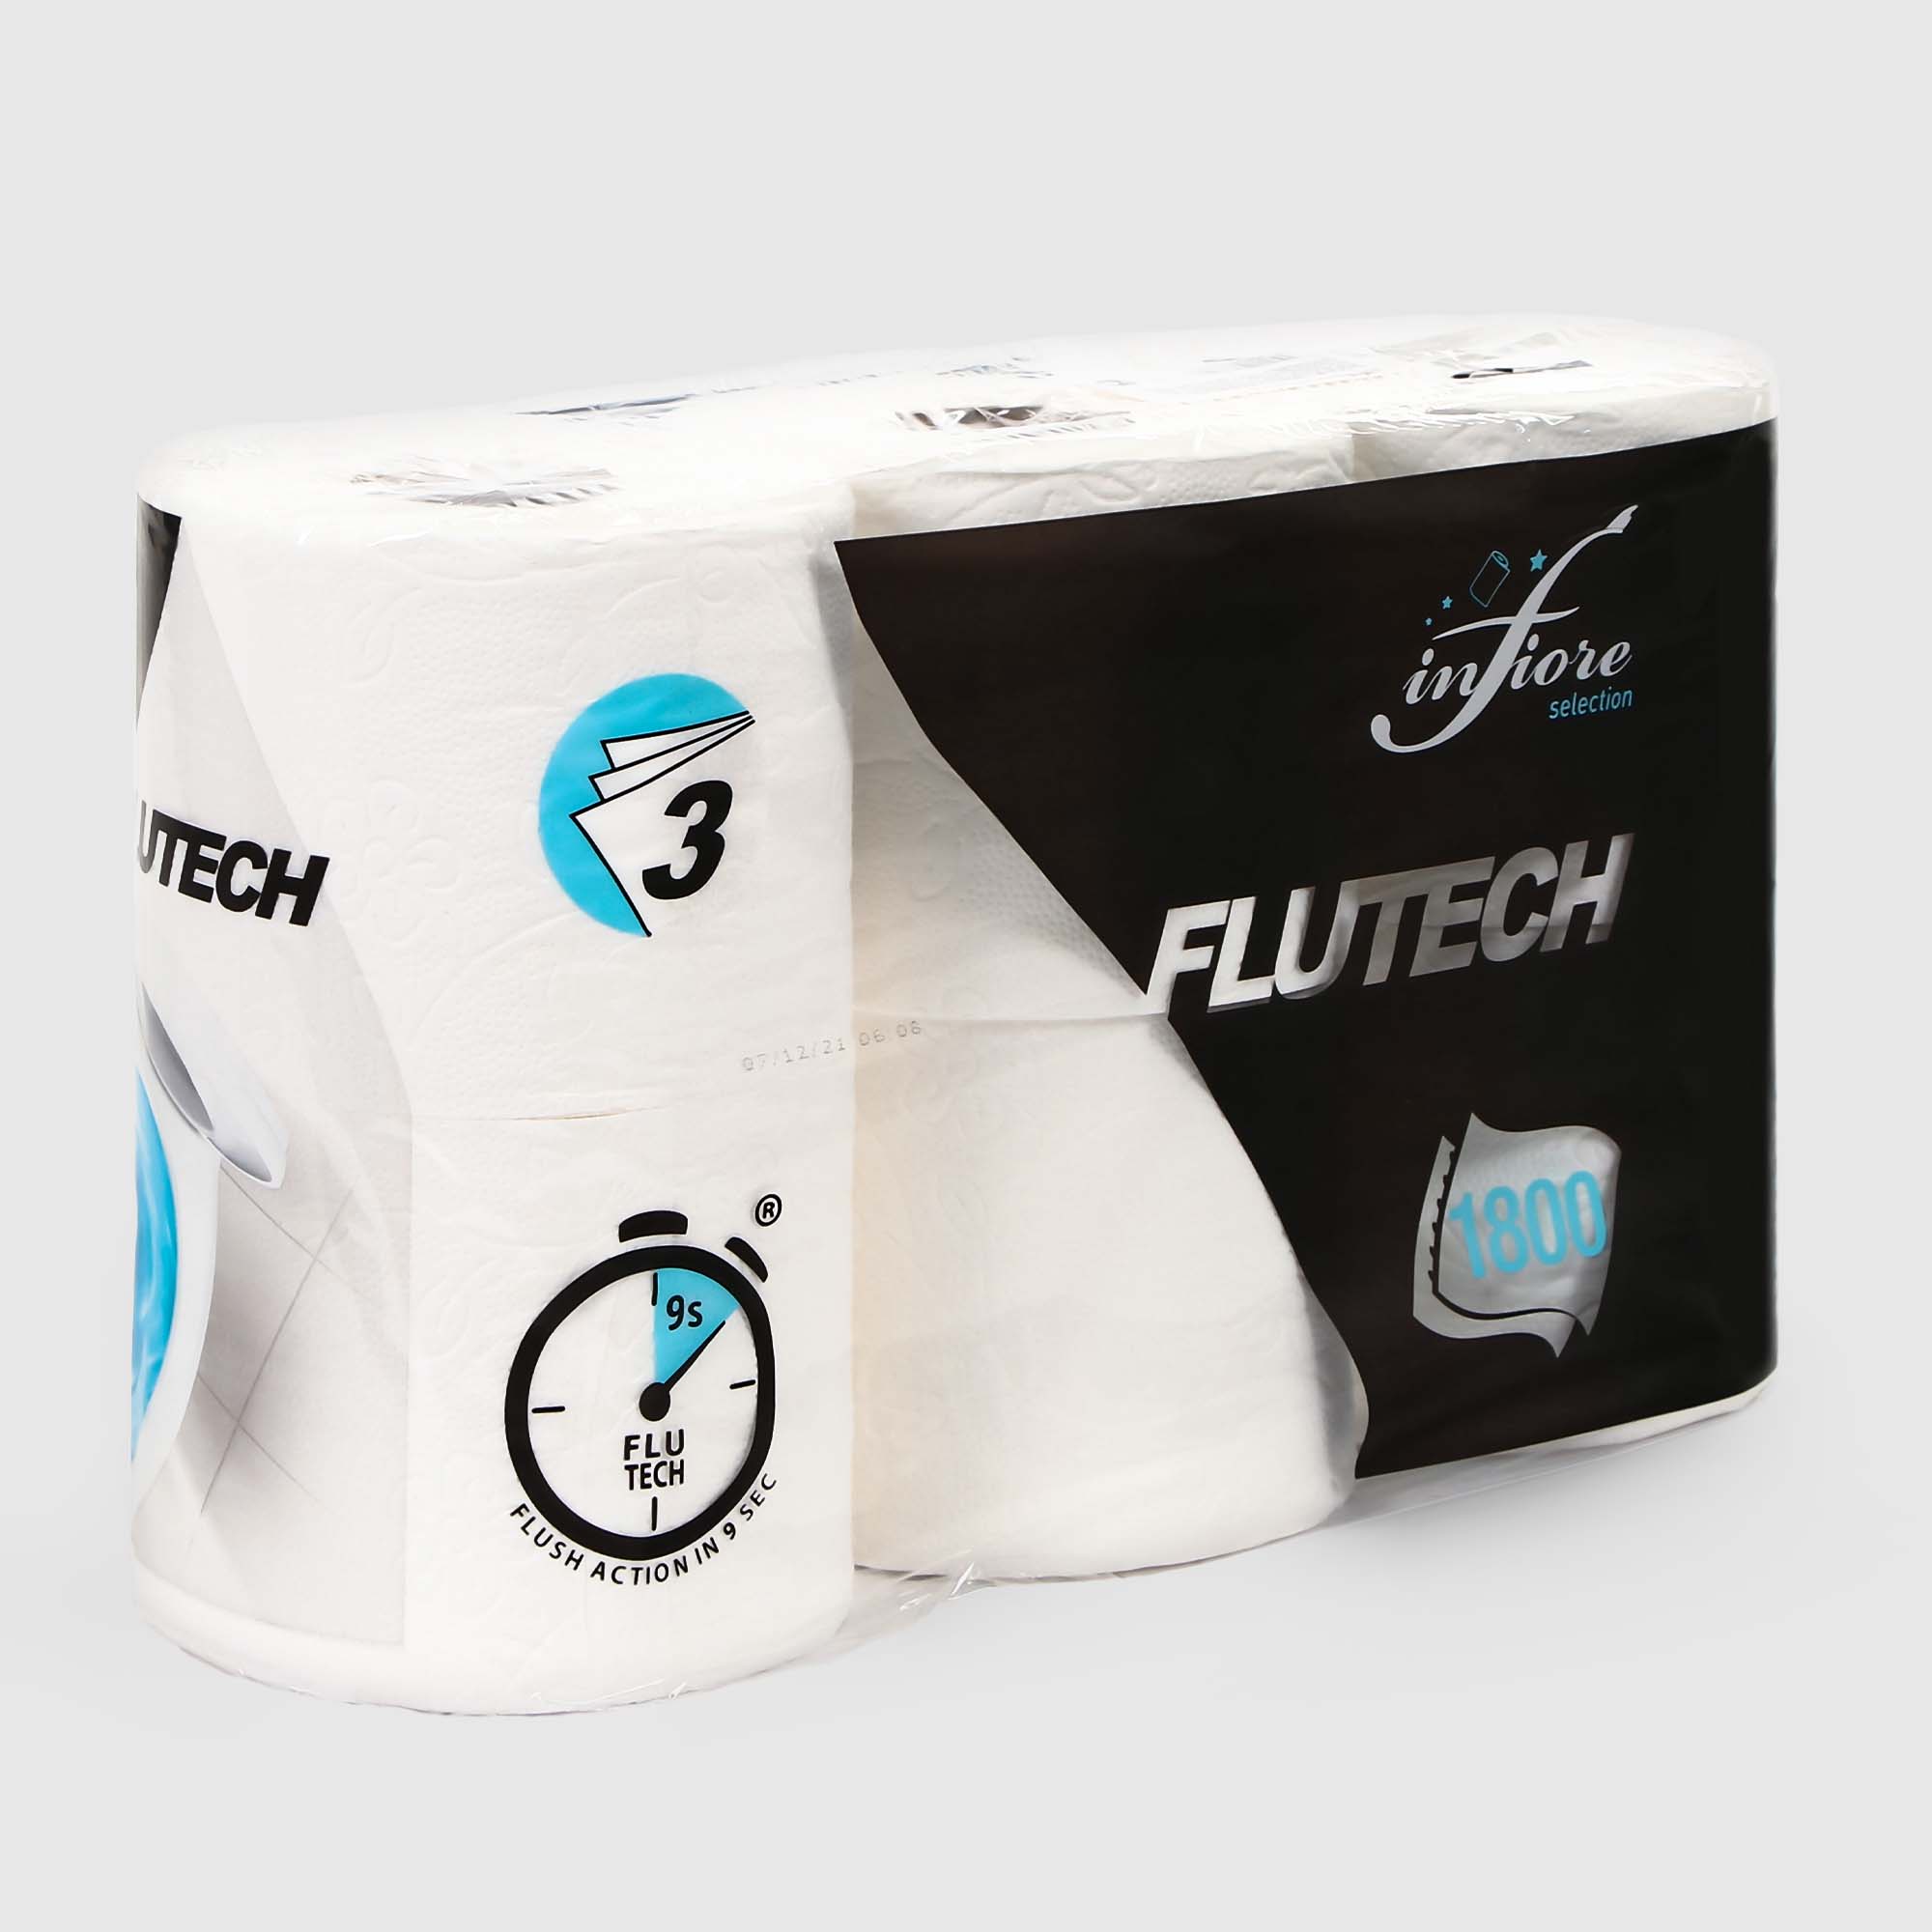 Бумага туалетная Infiore flutech зх слоя 6рулонов/упаковка, цвет белый - фото 1